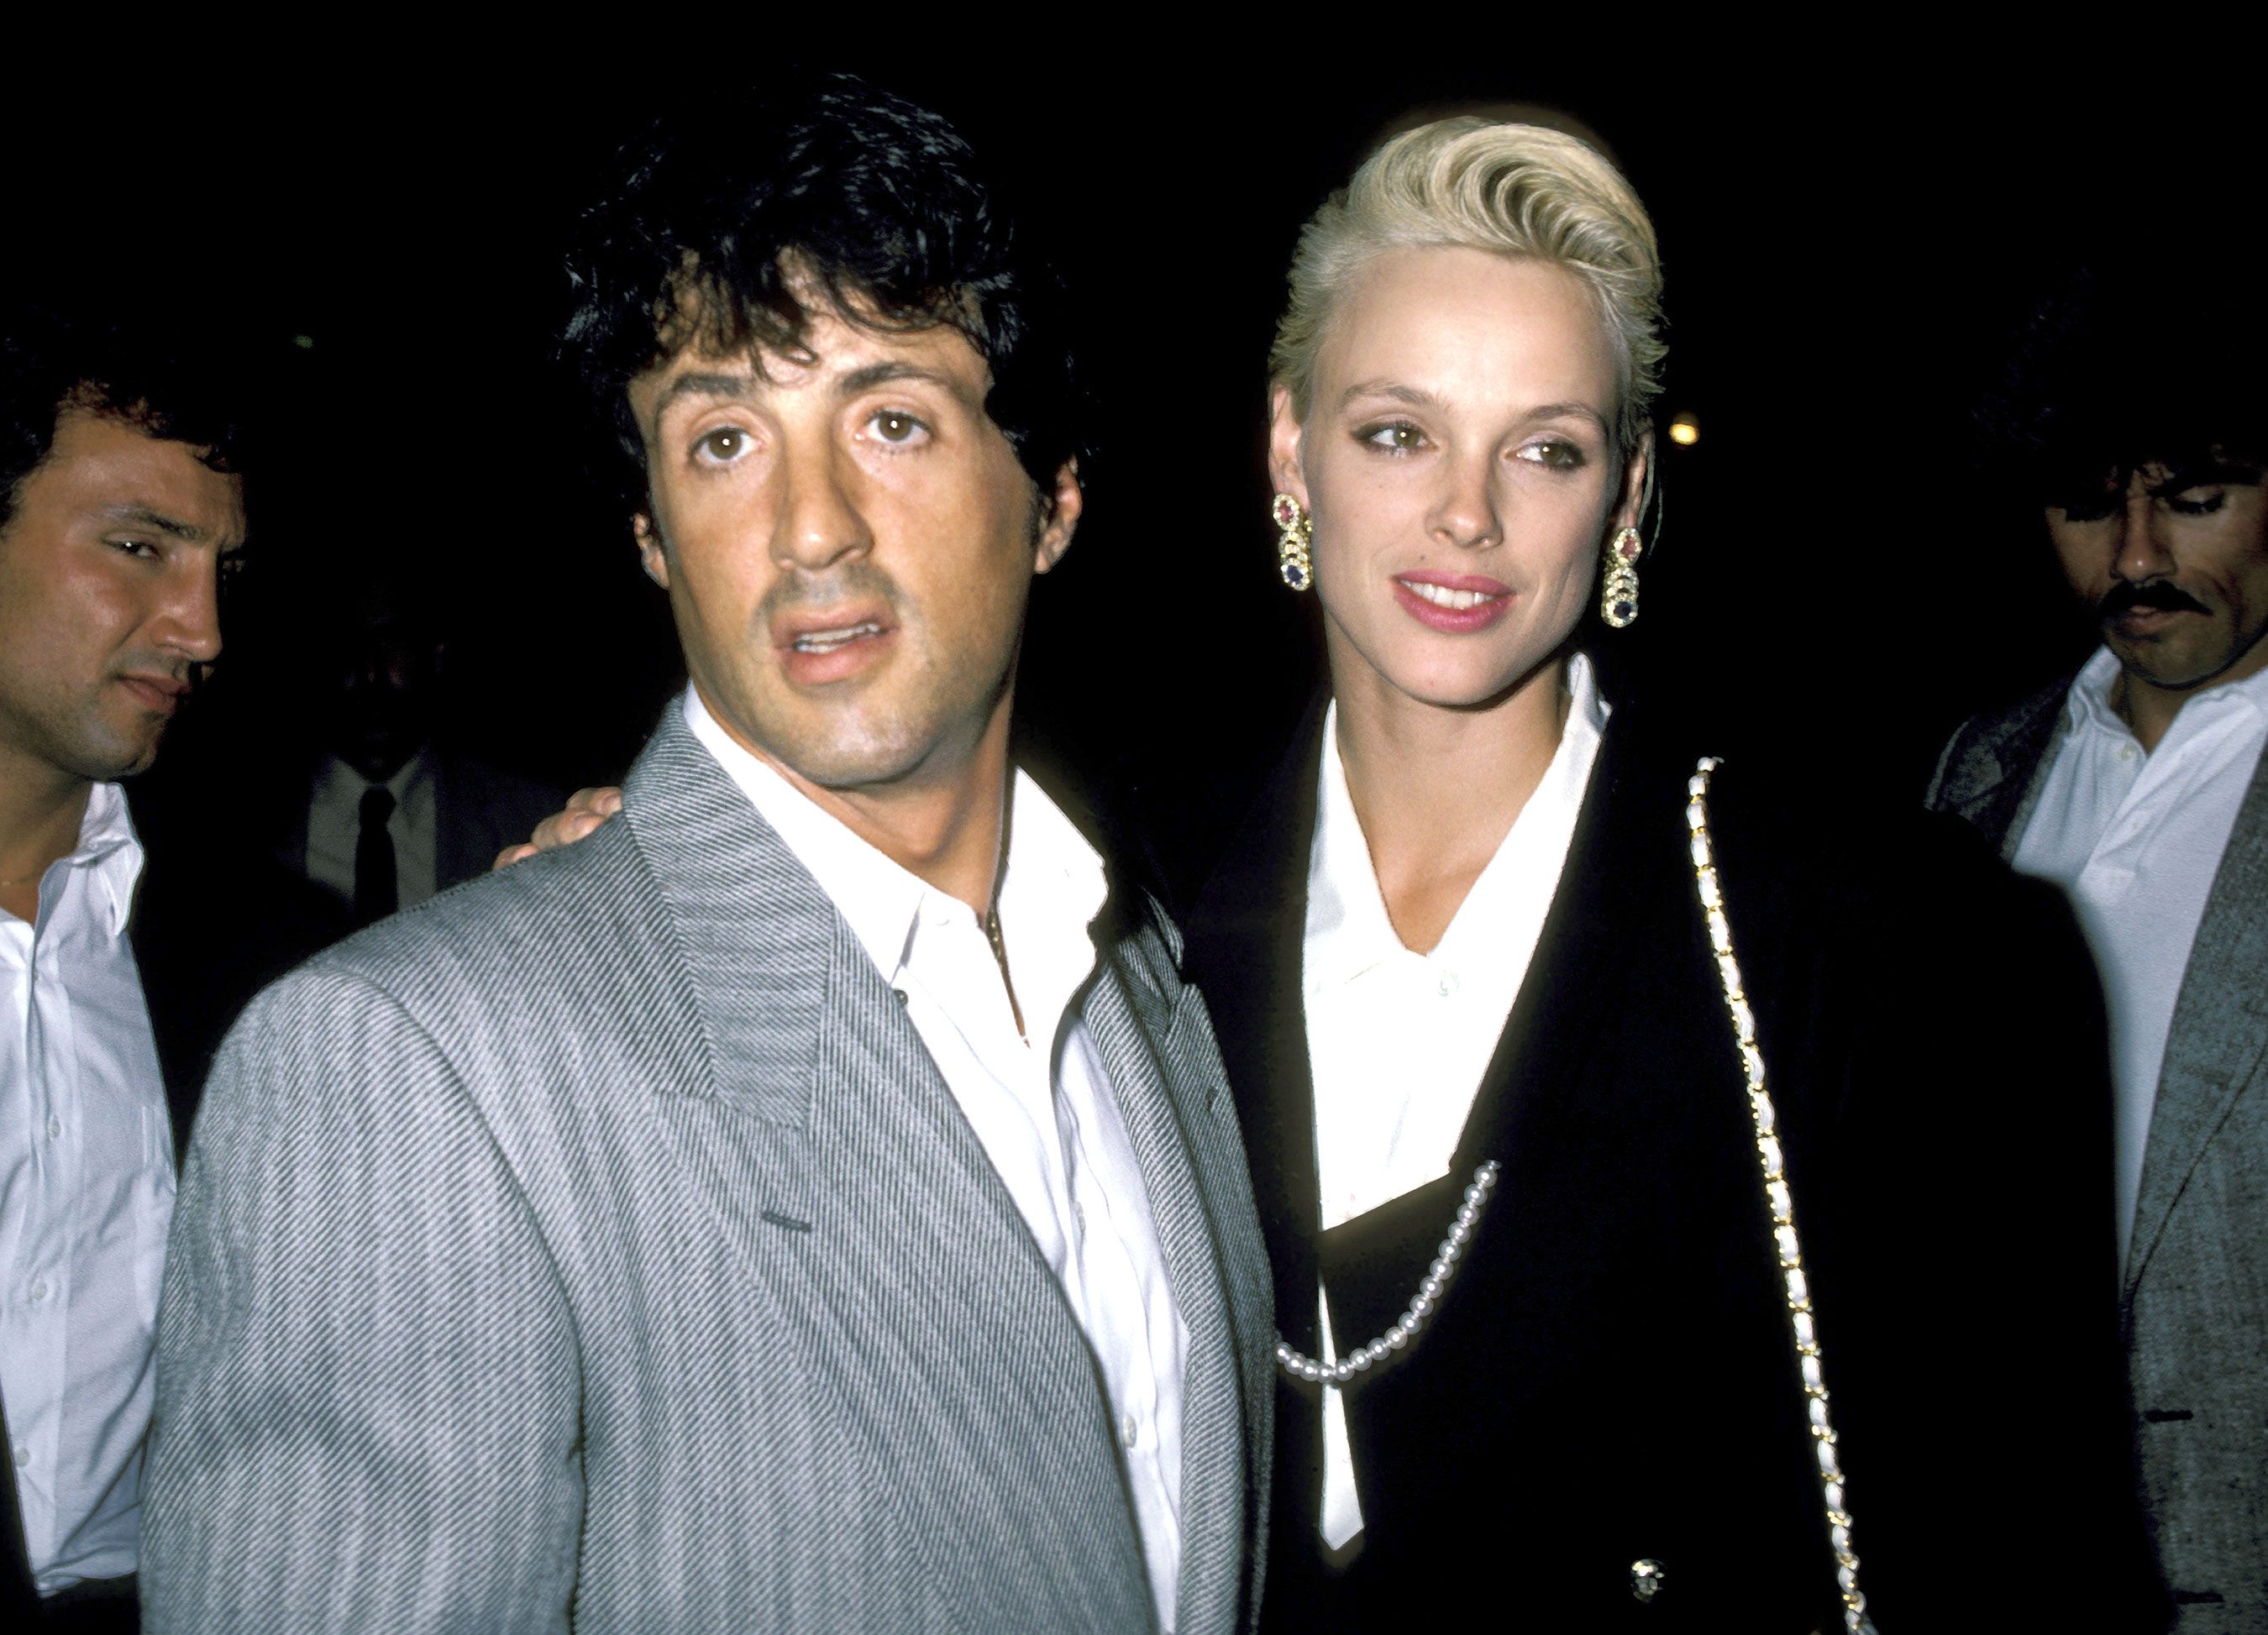 Fracasso, pobreza e acusação de estupro: conheça segredos de Sylvester Stallone - 2